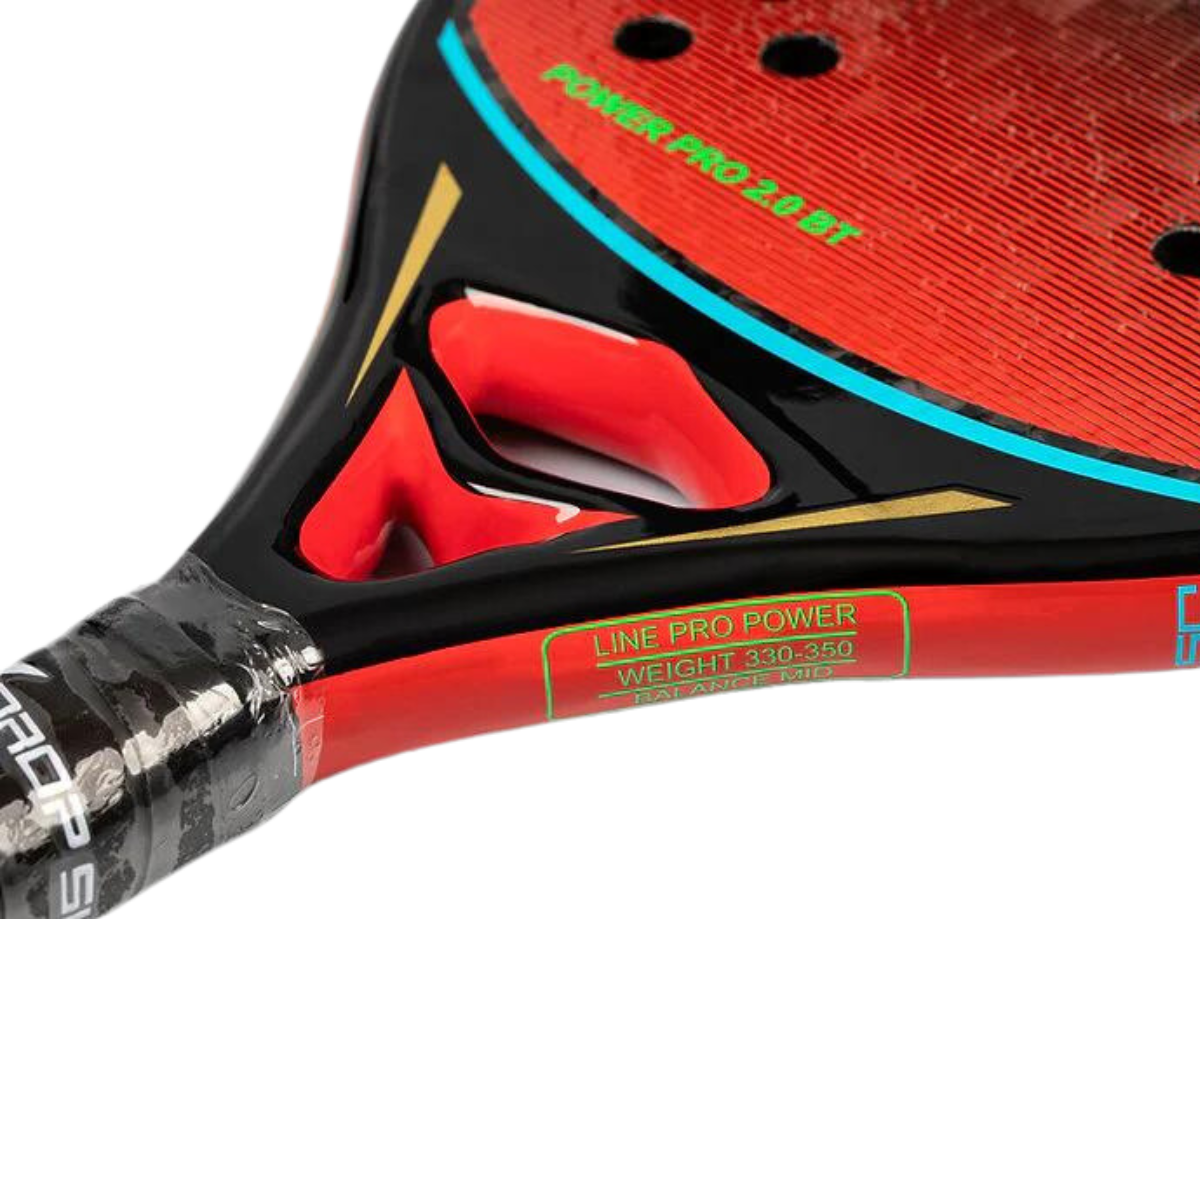 Drop Shot Power Pro 2.0 Beach Tennis Racket